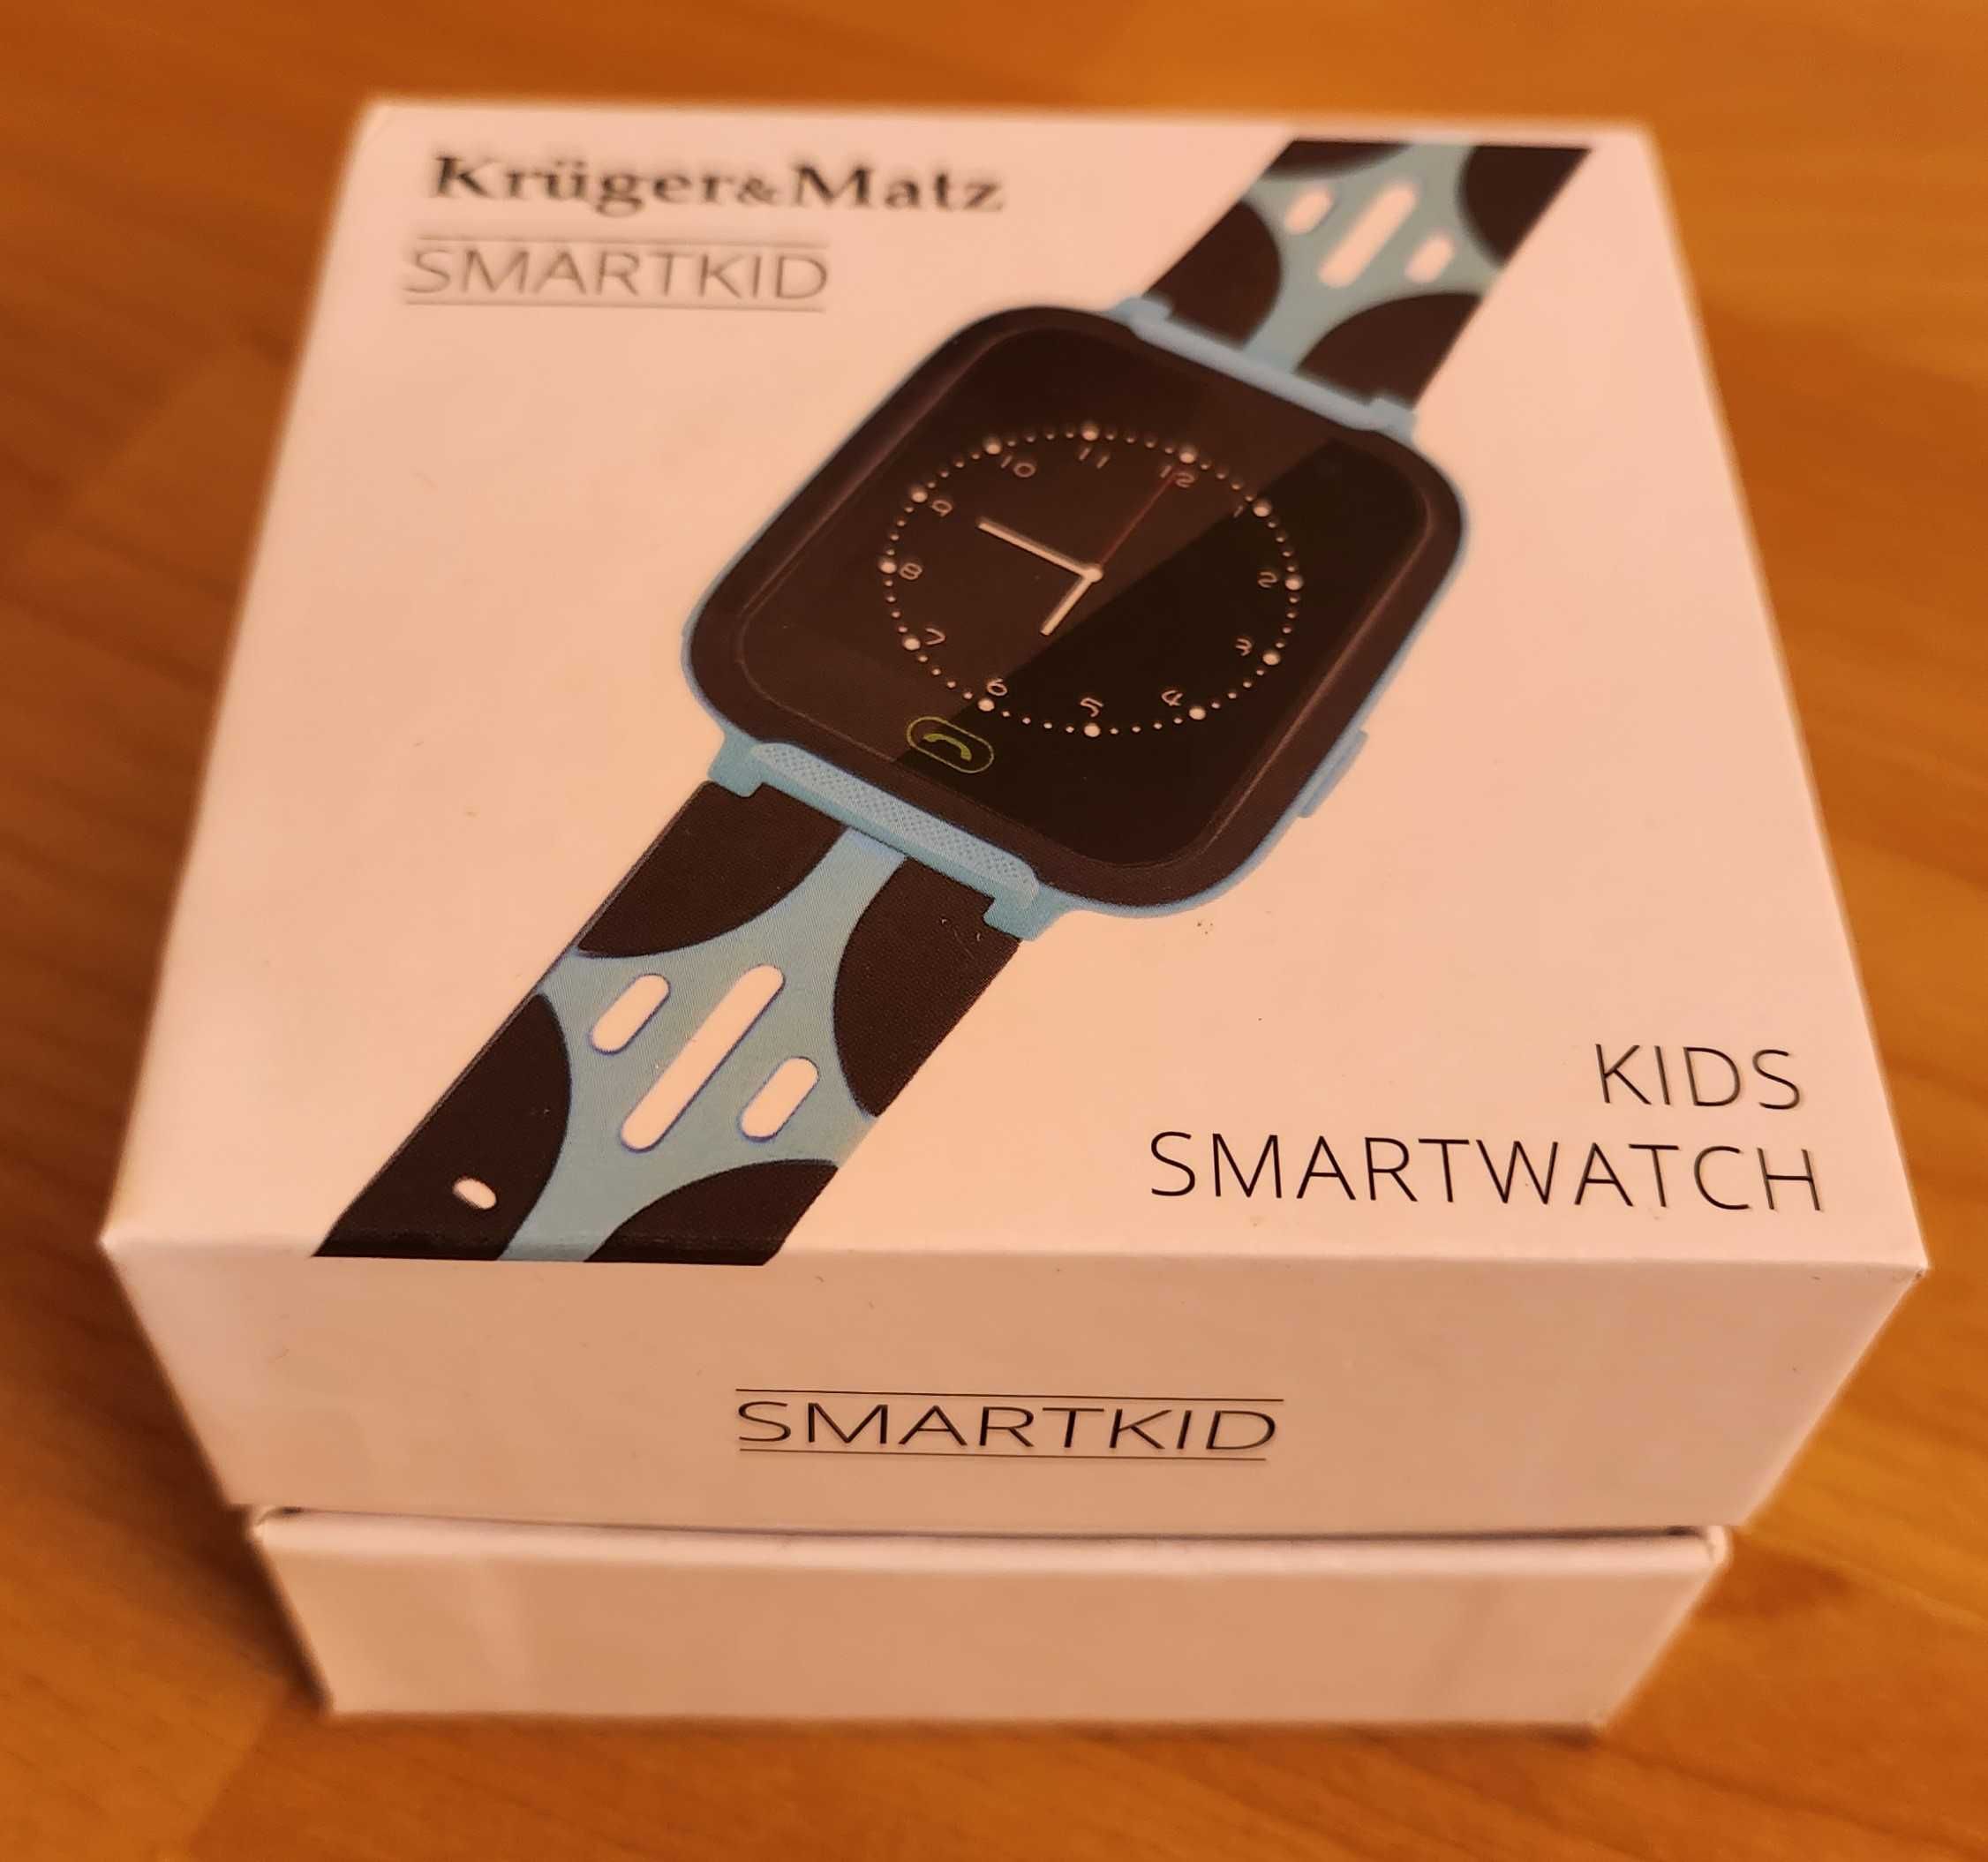 Zegarek dla dzieci Kruger&Matz KM0469B SmartKid (niebieski)